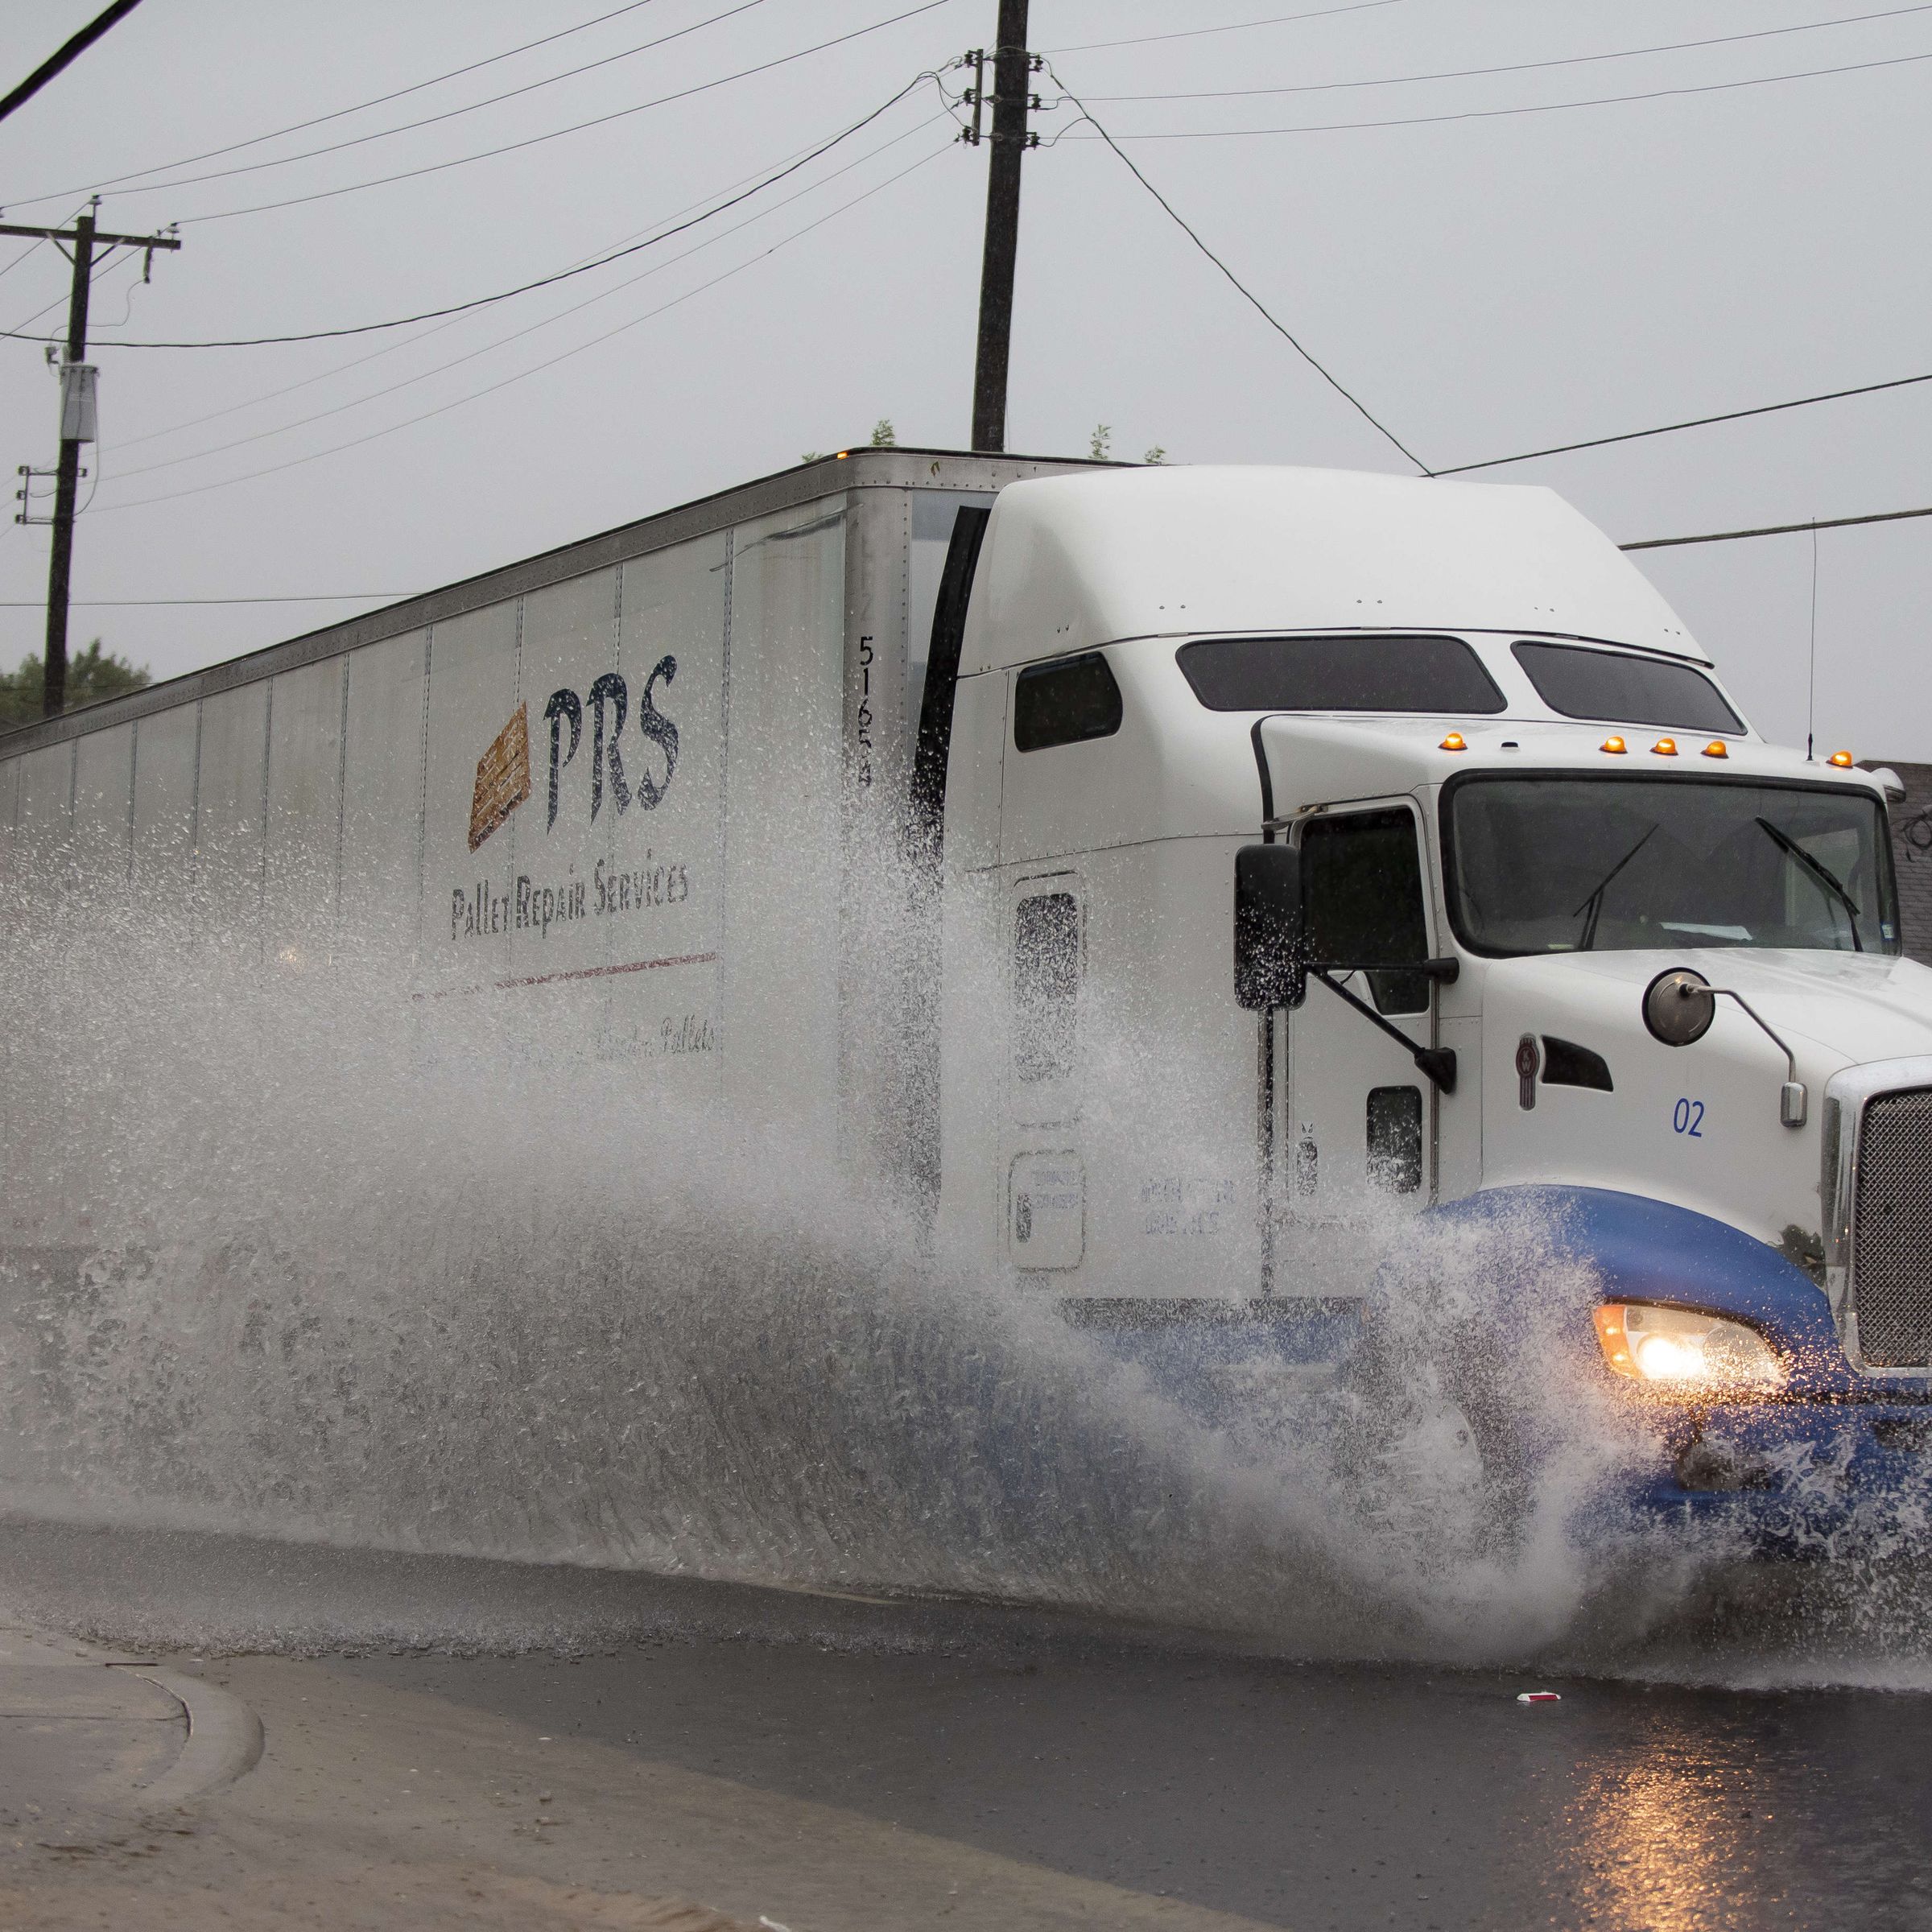 DALLAS, TX - AUGUST 22: A semi-truck drives through high water